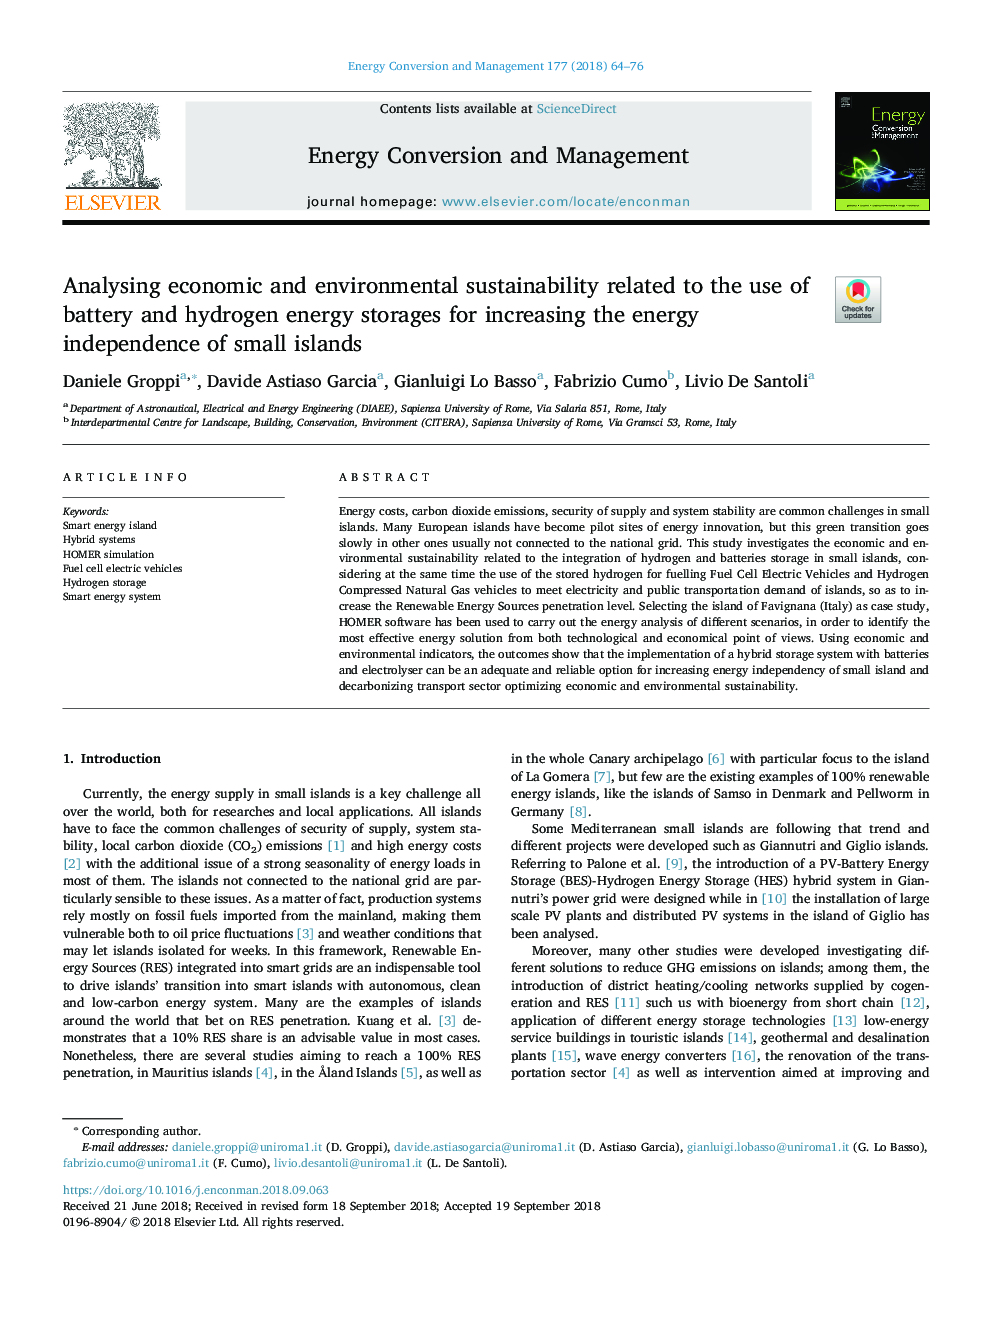 تجزیه و تحلیل پایدار اقتصادی و محیط زیست مربوط به استفاده از ذخیره انرژی باتری و هیدروژن برای افزایش استقلال انرژی جزایر کوچک